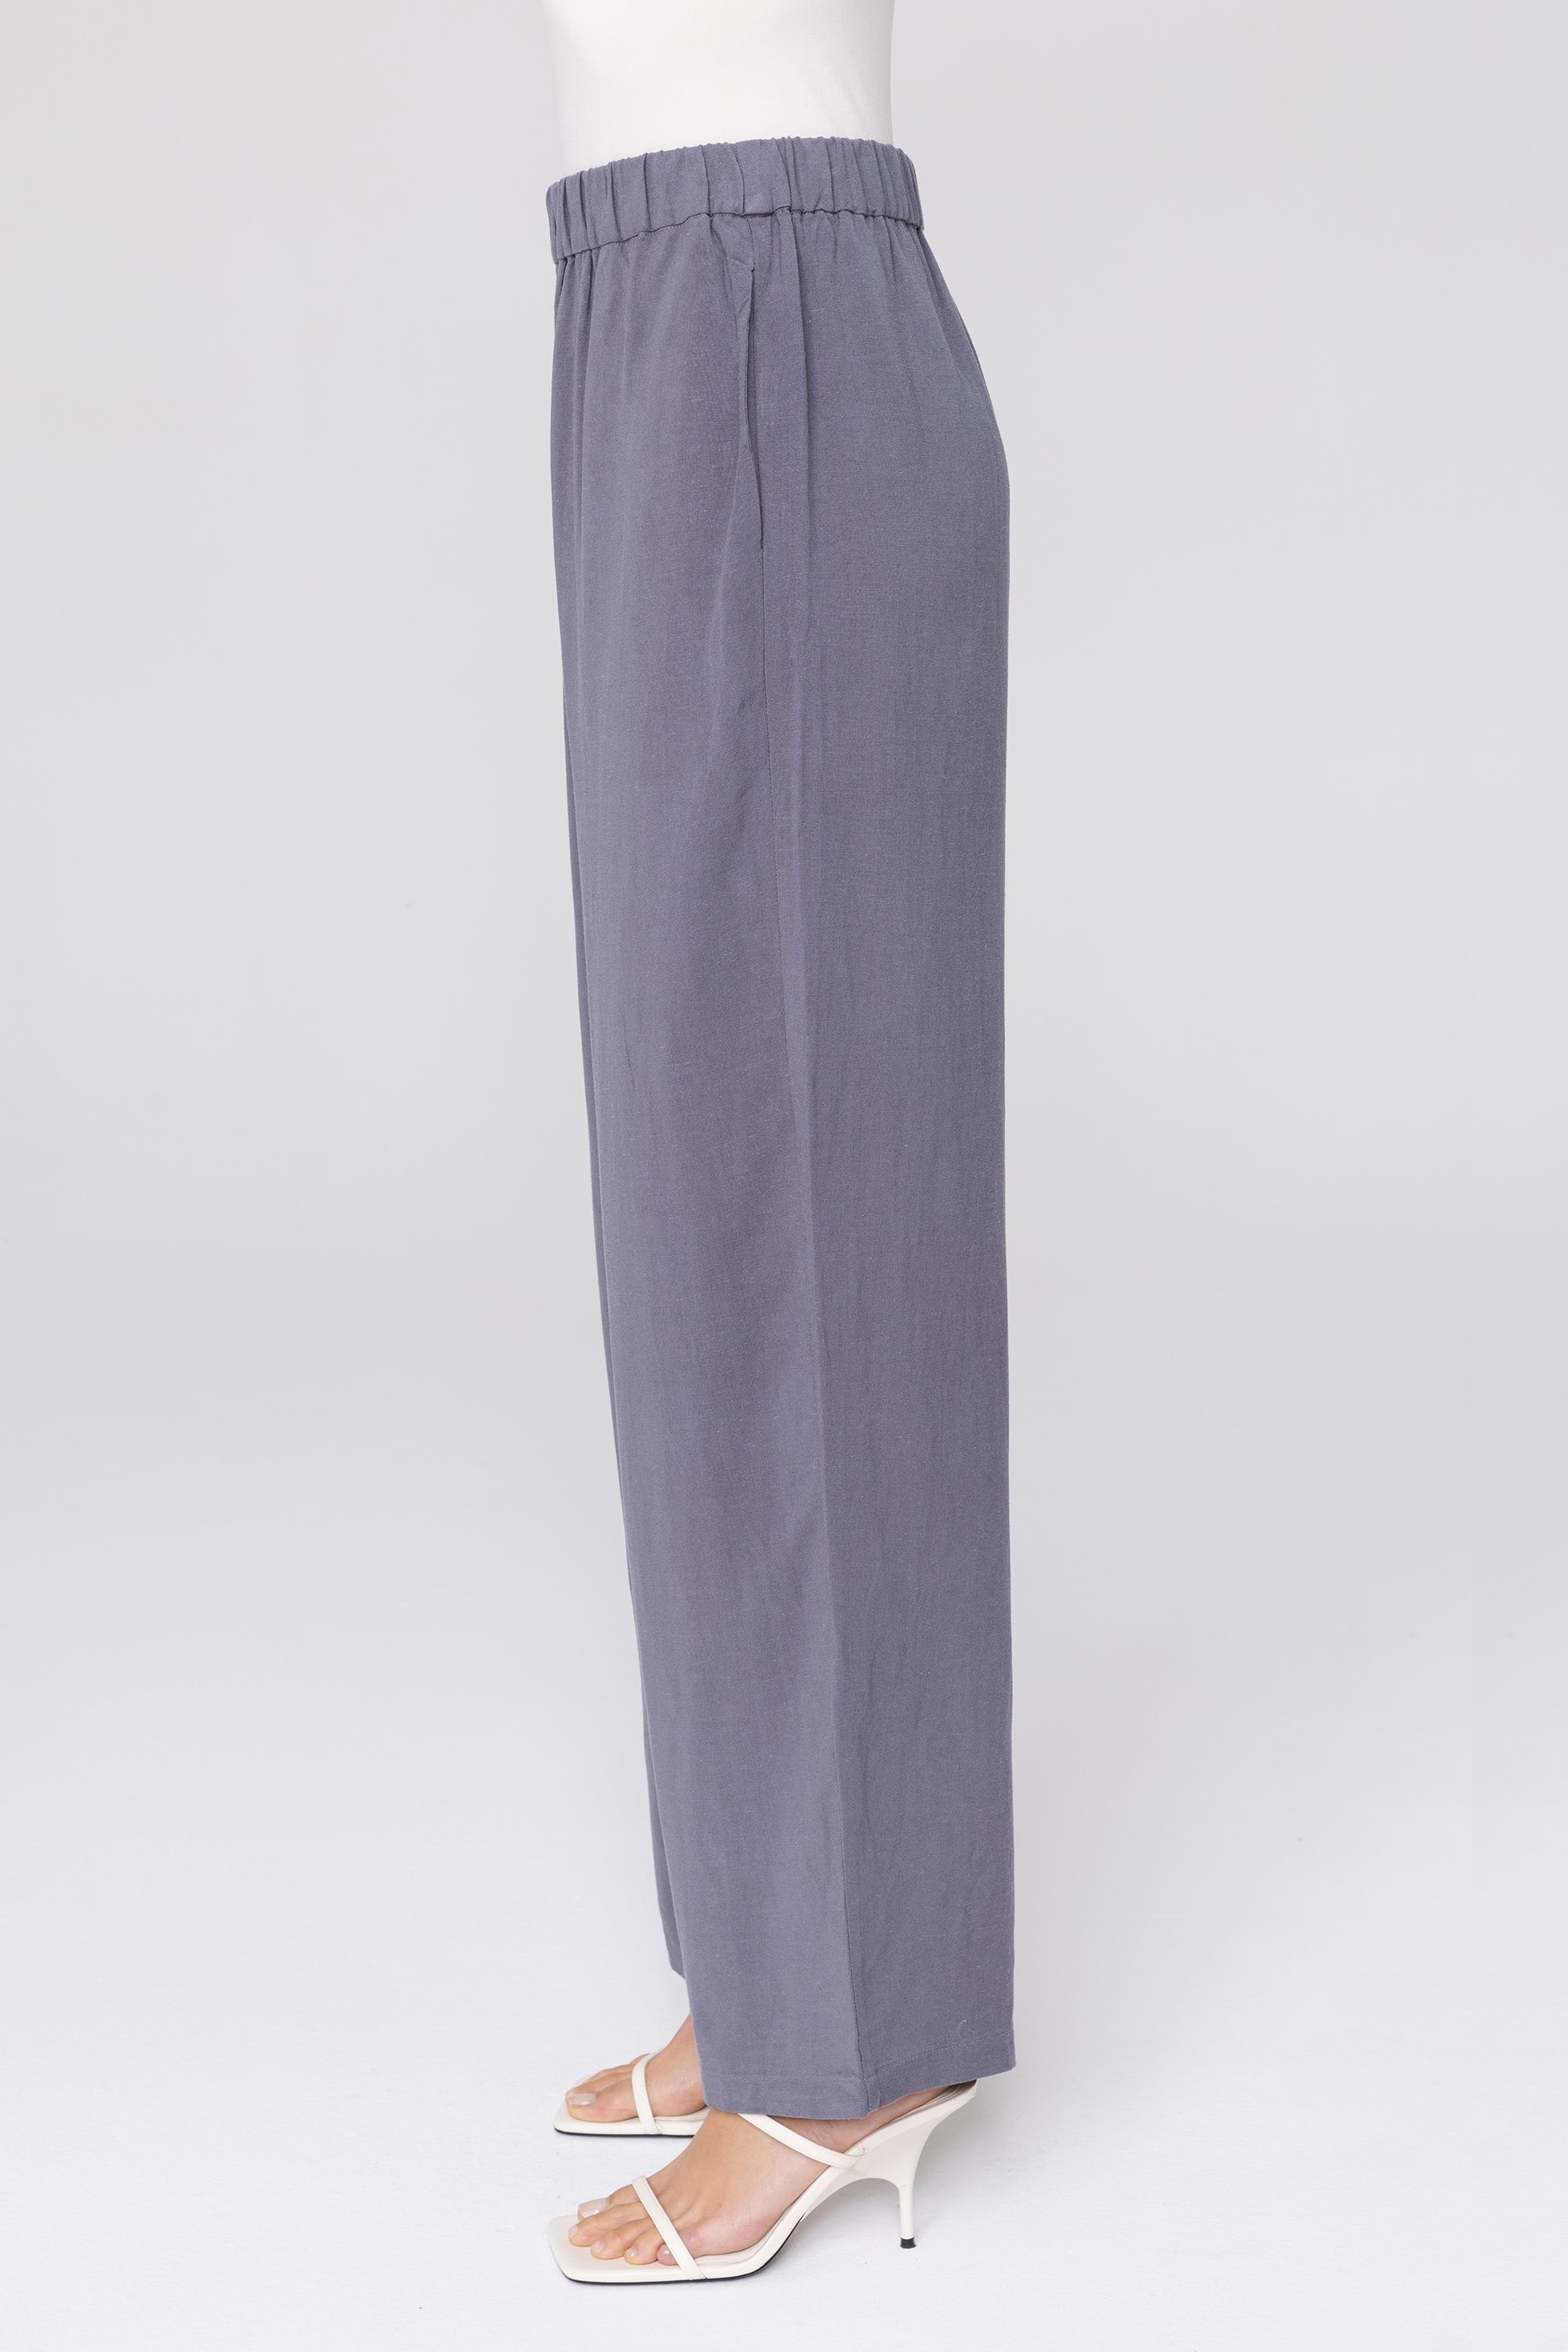 Linen Bermuda Shorts GEMMA, Linen Shorts for Woman, High Waist